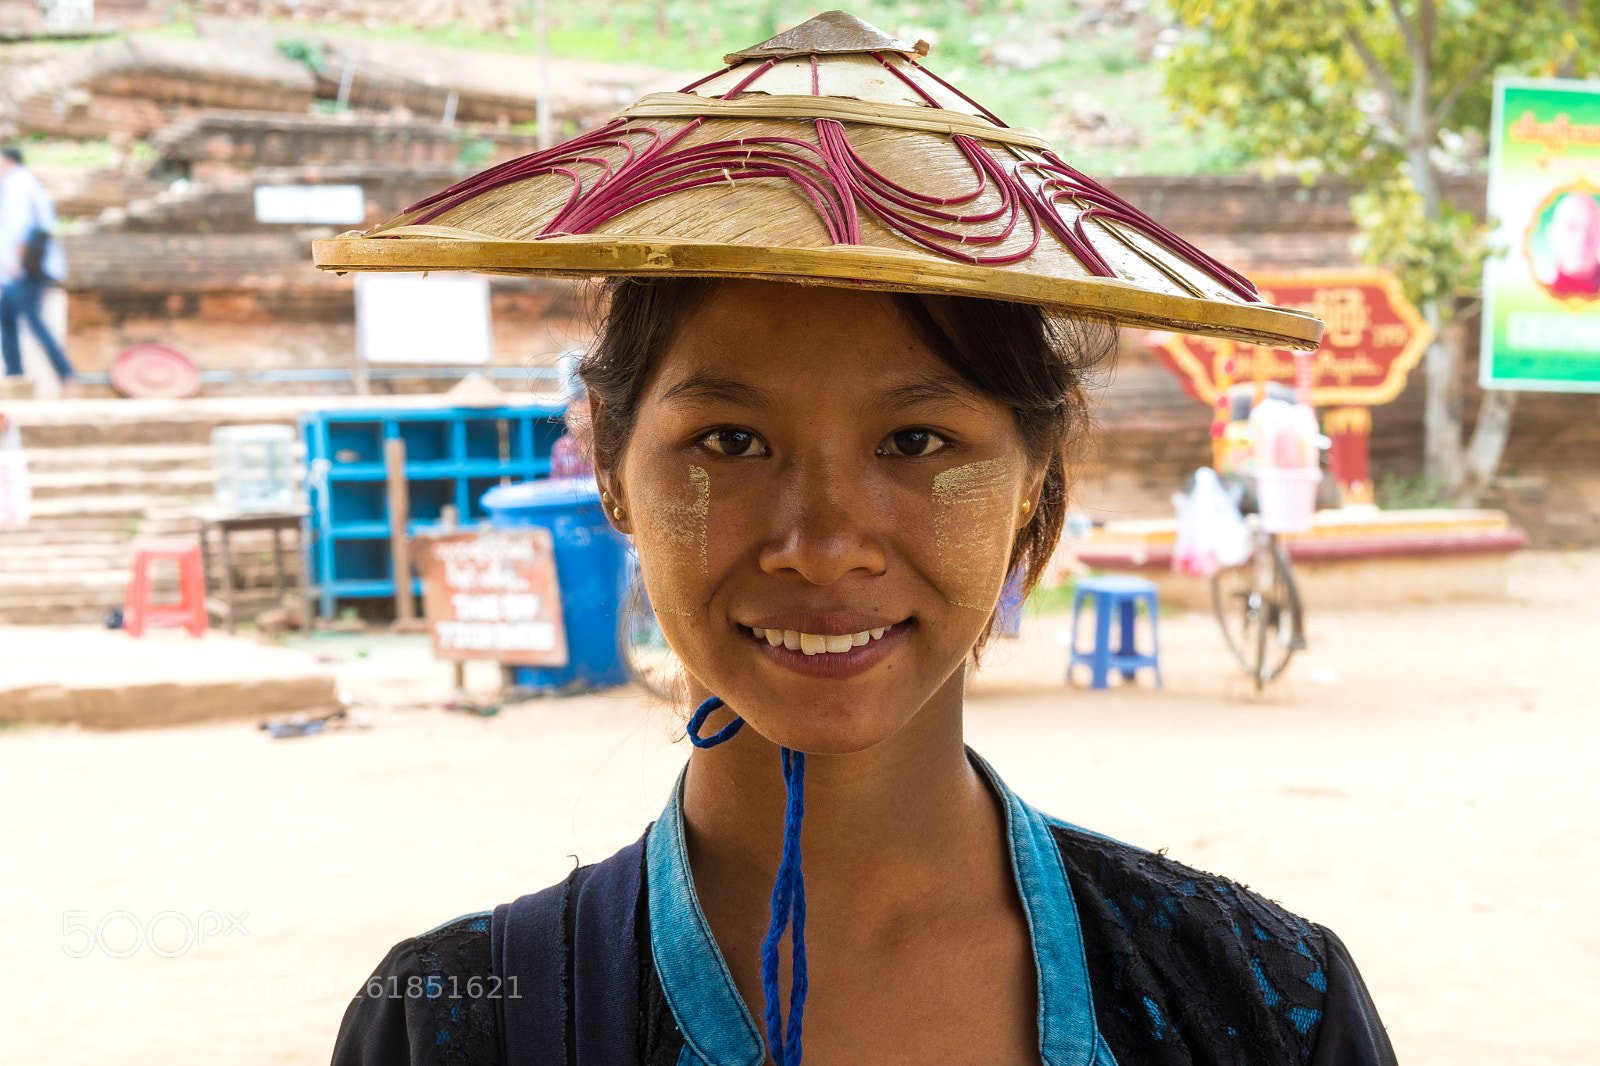 Nikon D5500 sample photo. Mingun, myanmar - woman photography